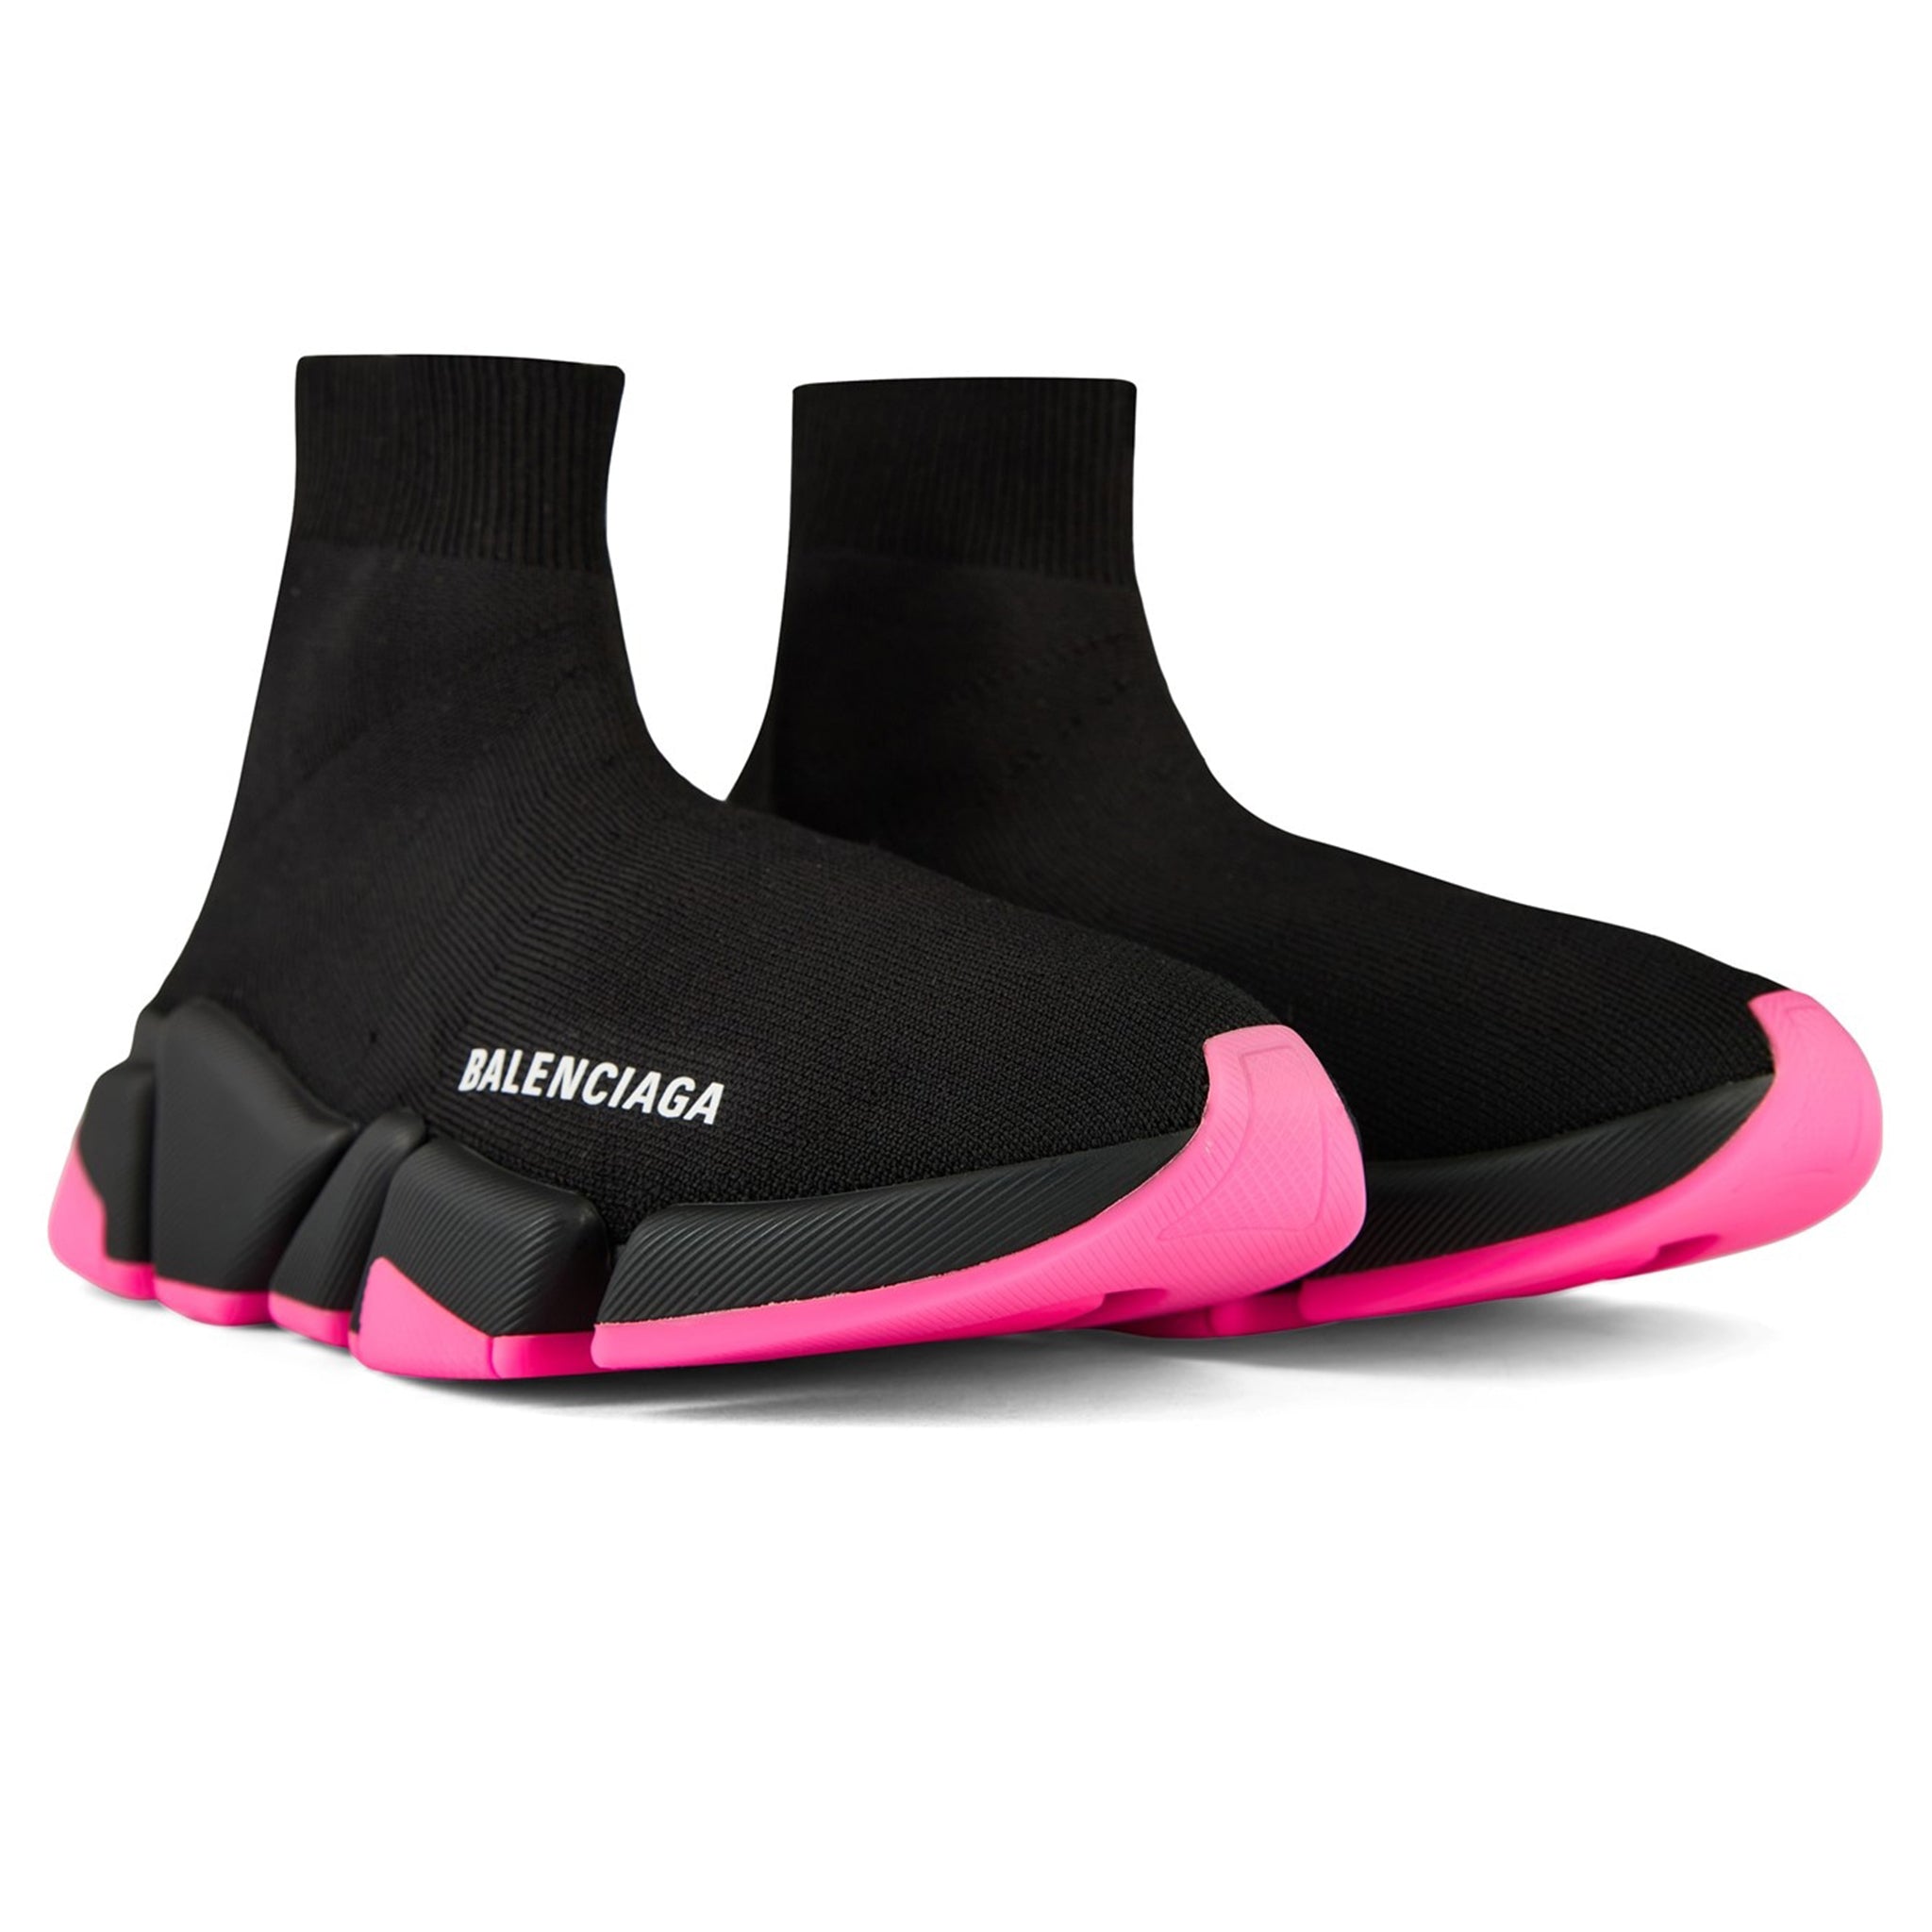 Giày Balenciaga Wmns Speed 20 Sneaker Light Pink 617196 W2DB1 5601  Hệ  thống phân phối Air Jordan chính hãng